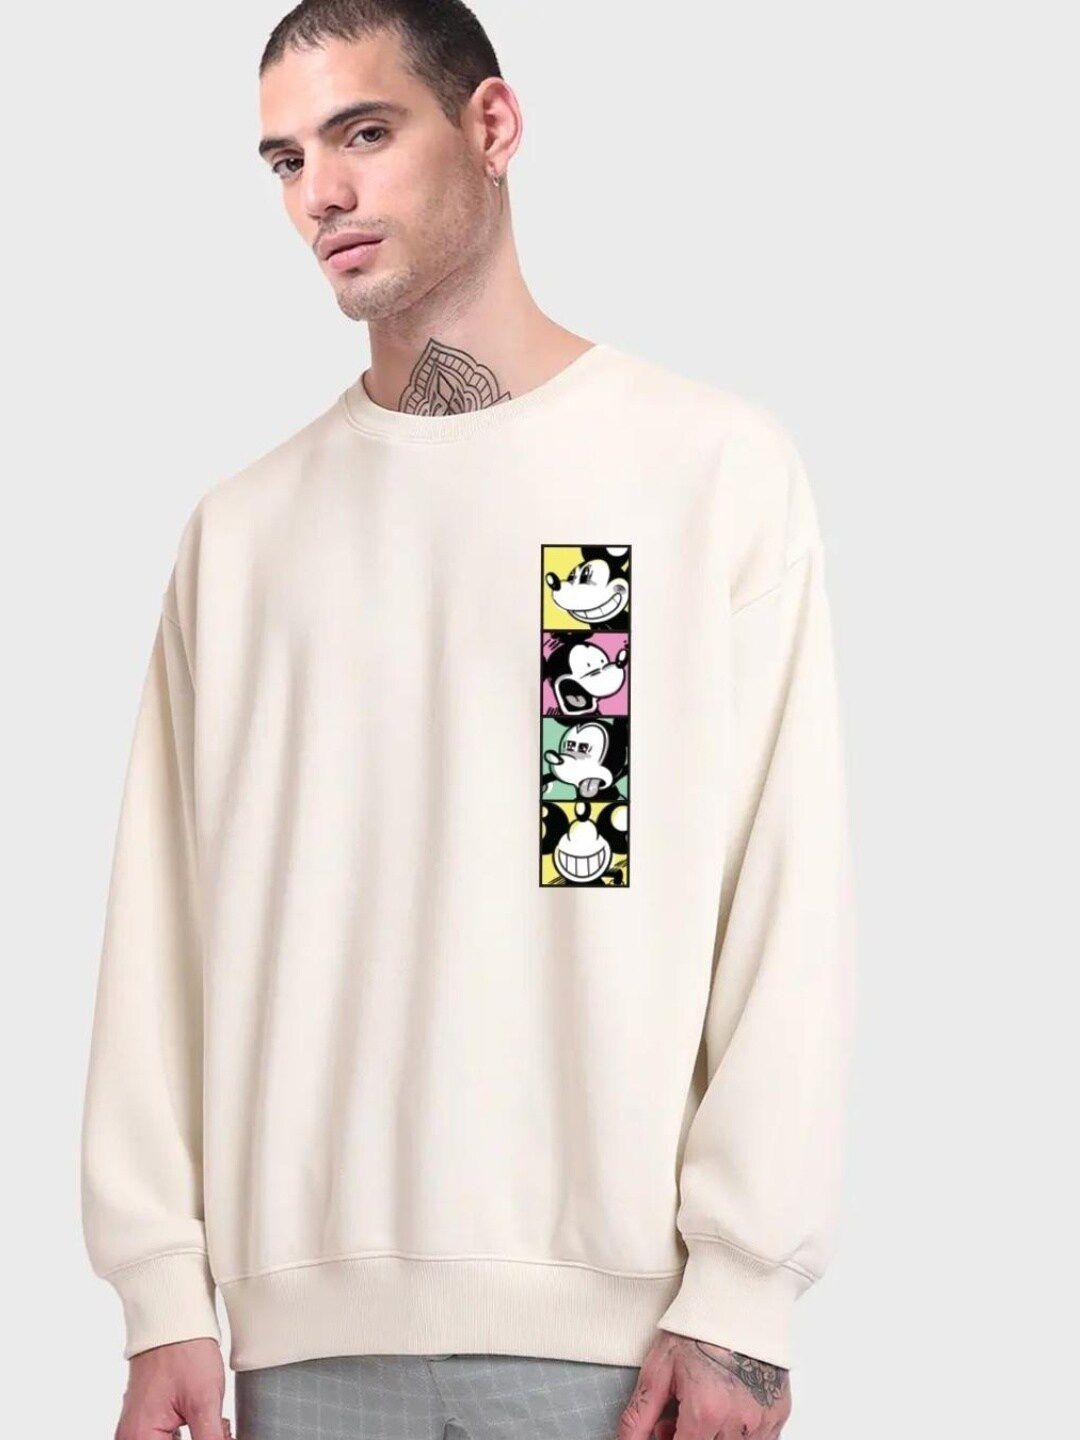 bewakoof men graphic printed round neck sweatshirt